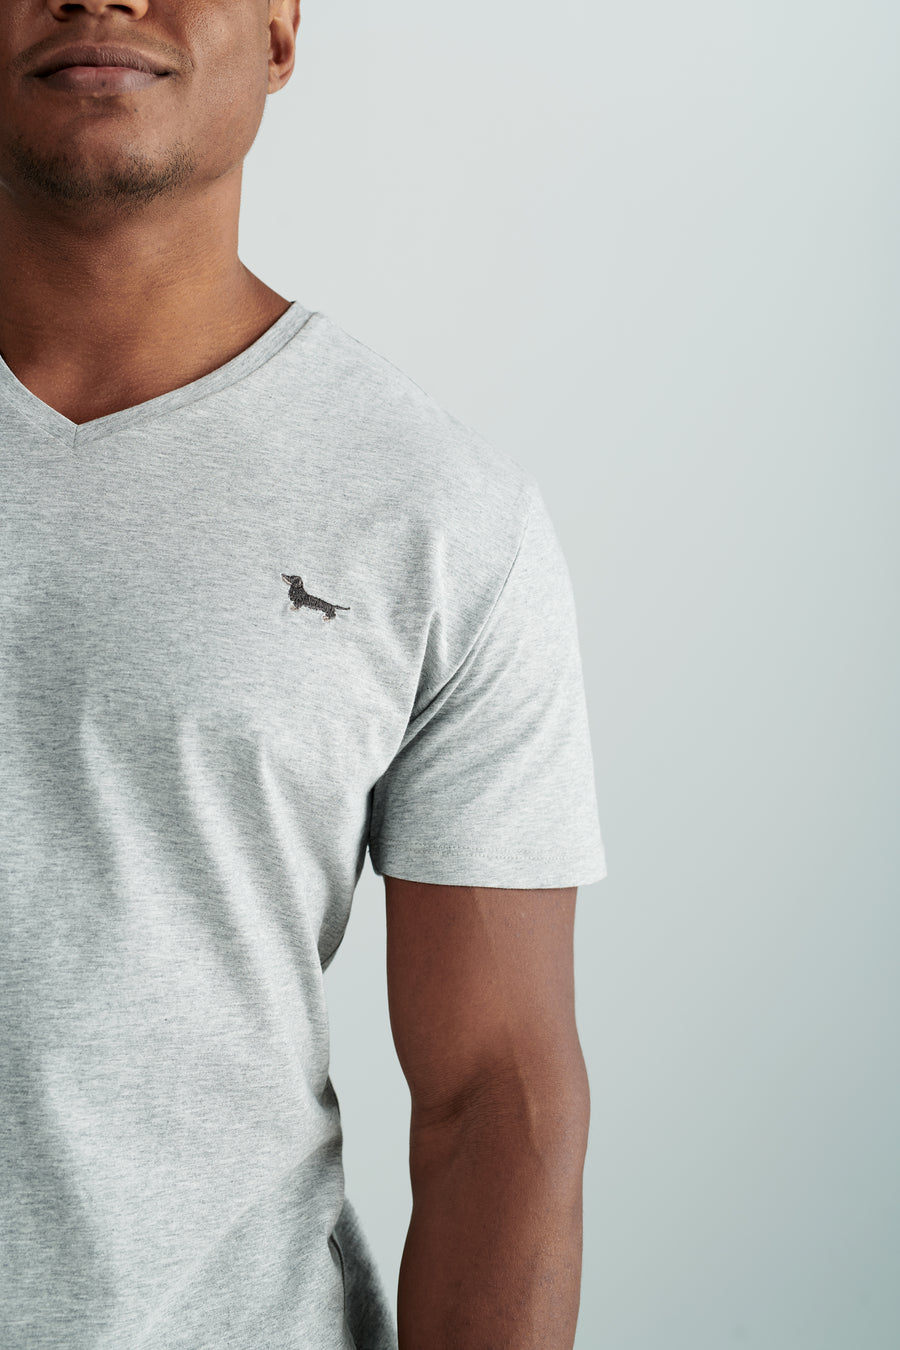 Nachhaltiges Herren T-Shirt in Grau mit Rauhaardackel Motiv